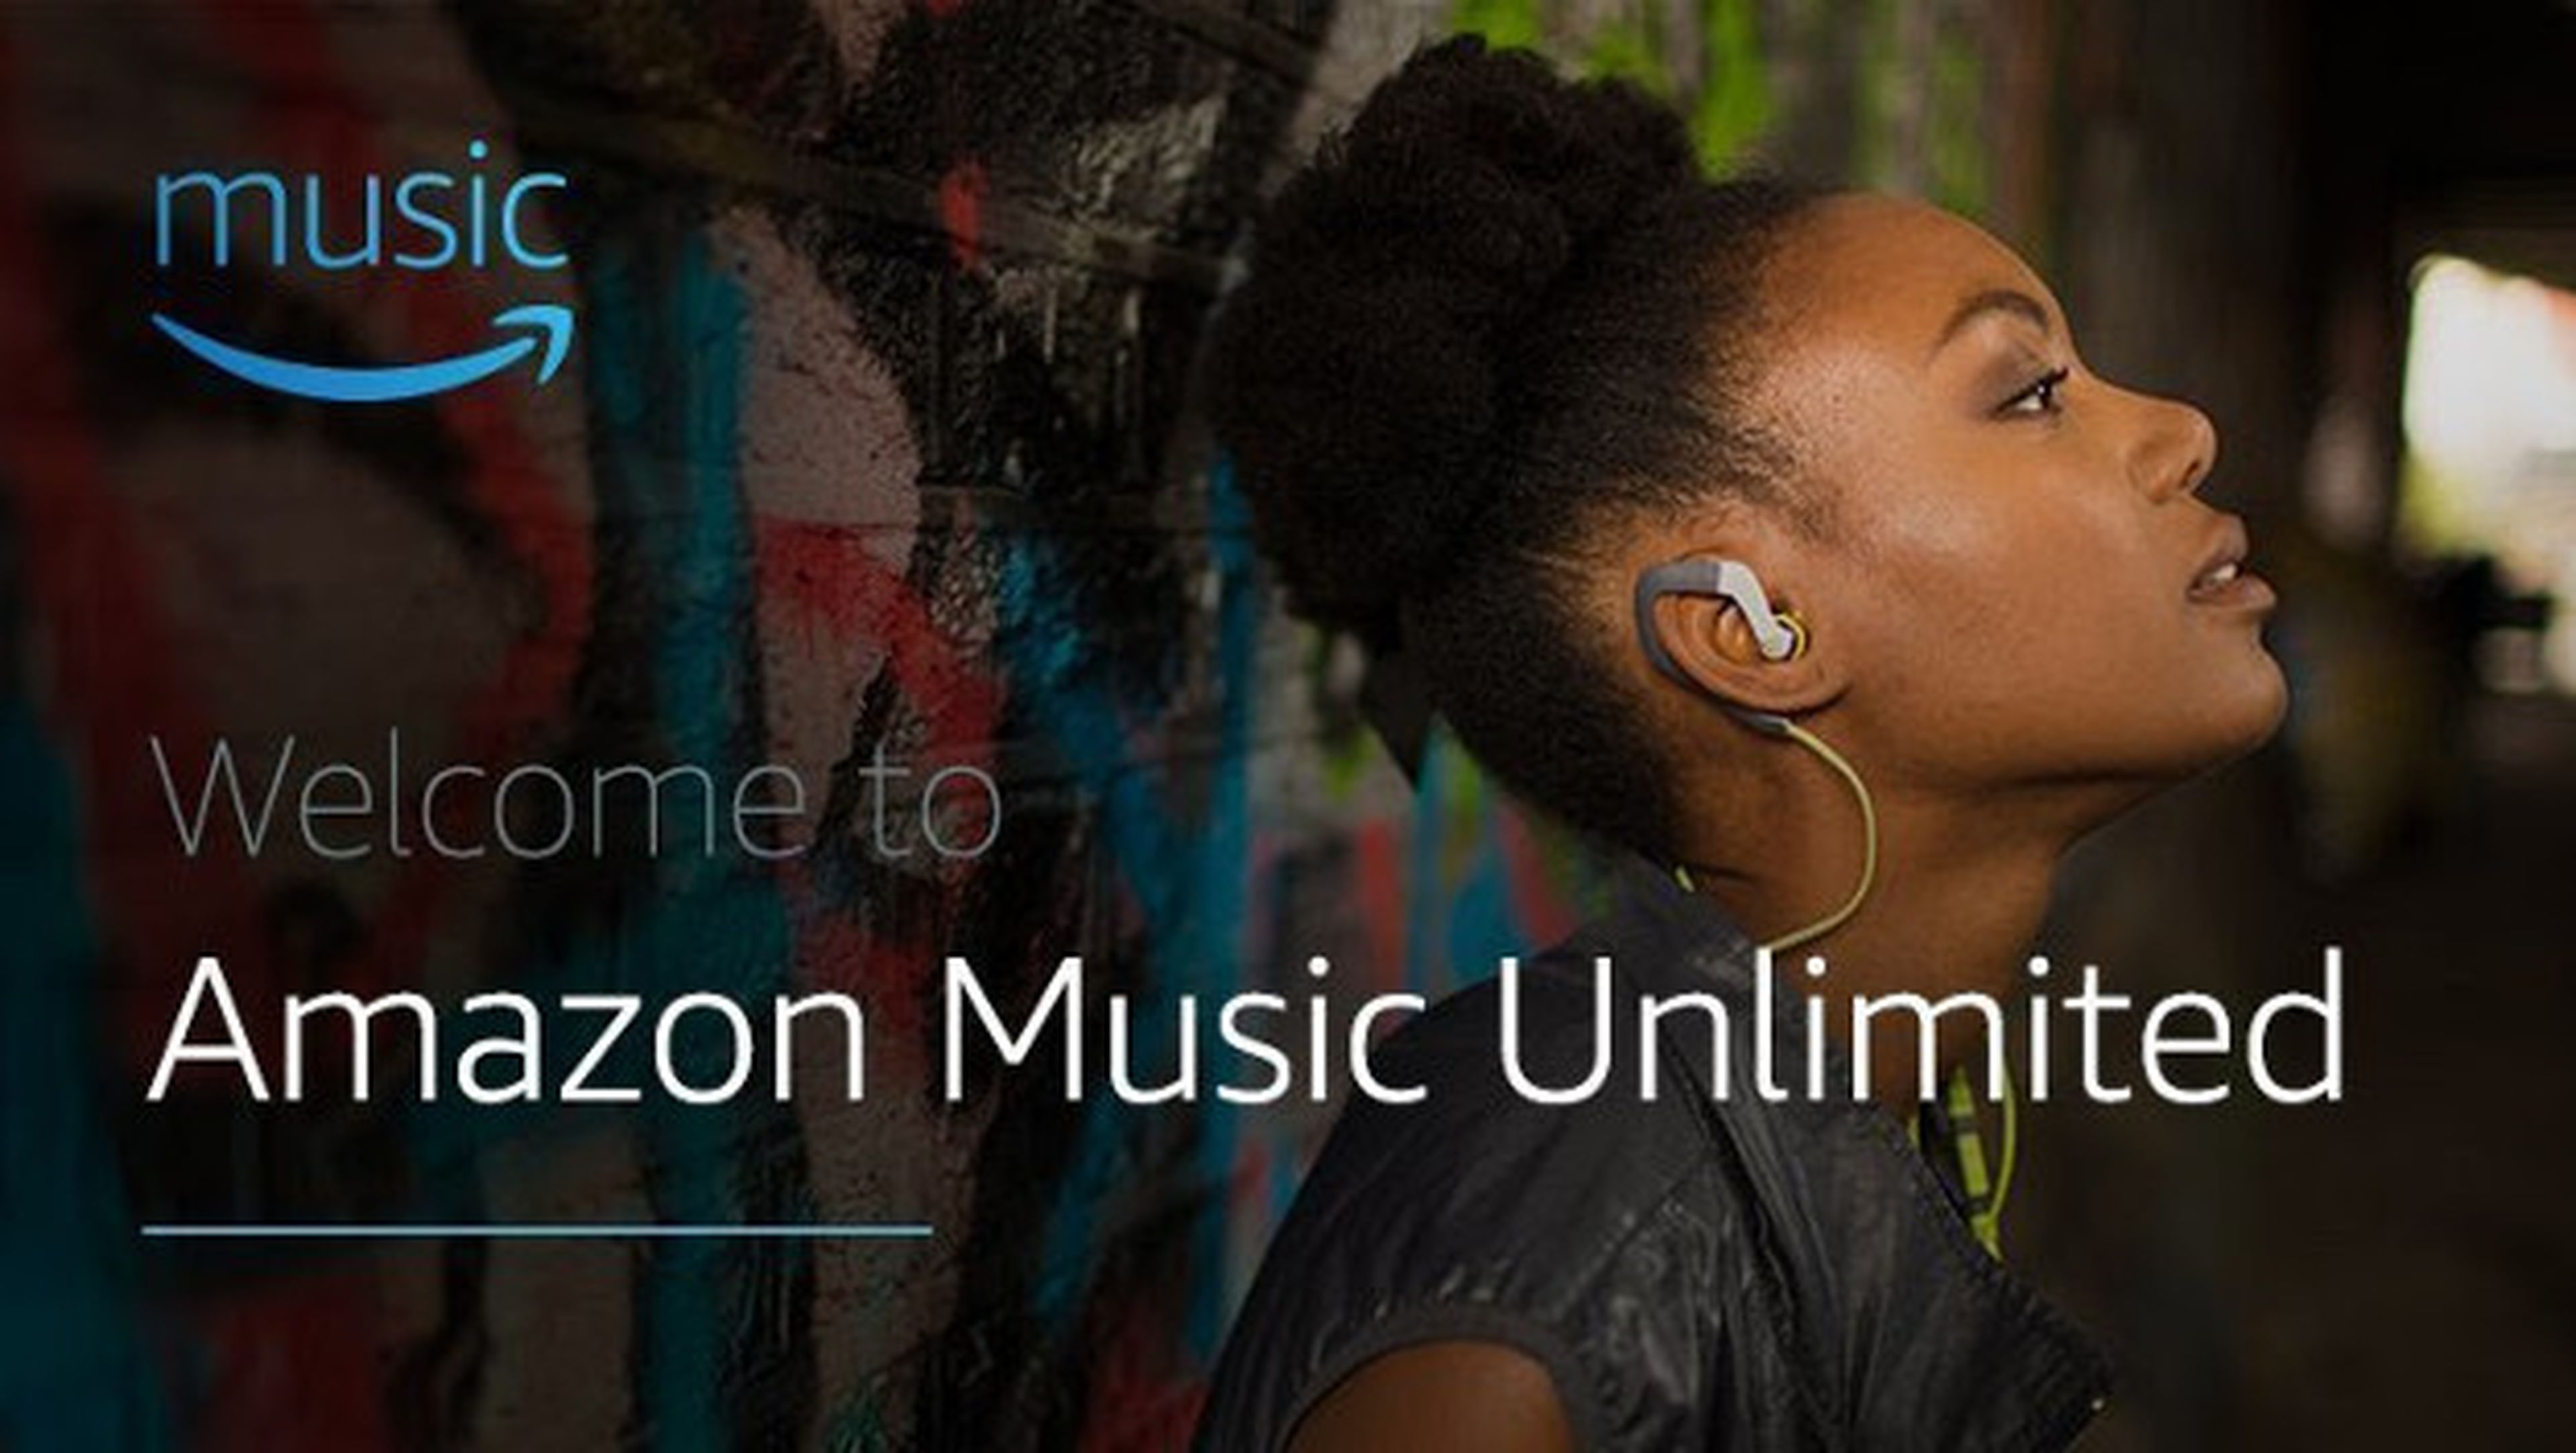 Aprovecha el descuento en Amazon Music Unlimited y escucha música gratis durante tres meses con tu suscripción anual.